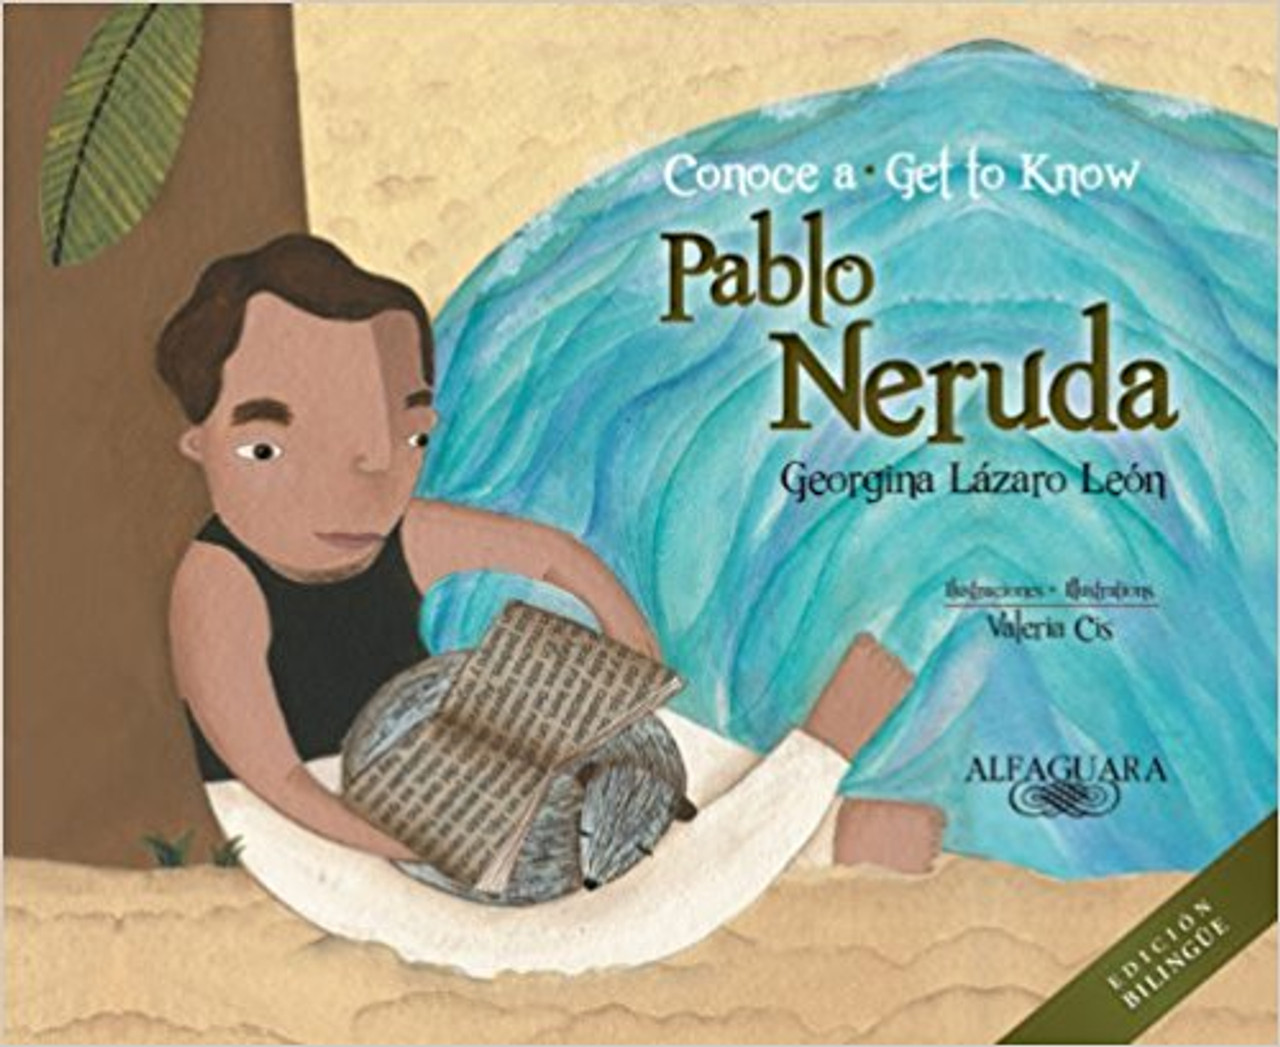 Conoce a Pablo Neruda/Get to Know Pablo Neruda by Georgina Lazaro Leon by Georgina Lazaro Leon